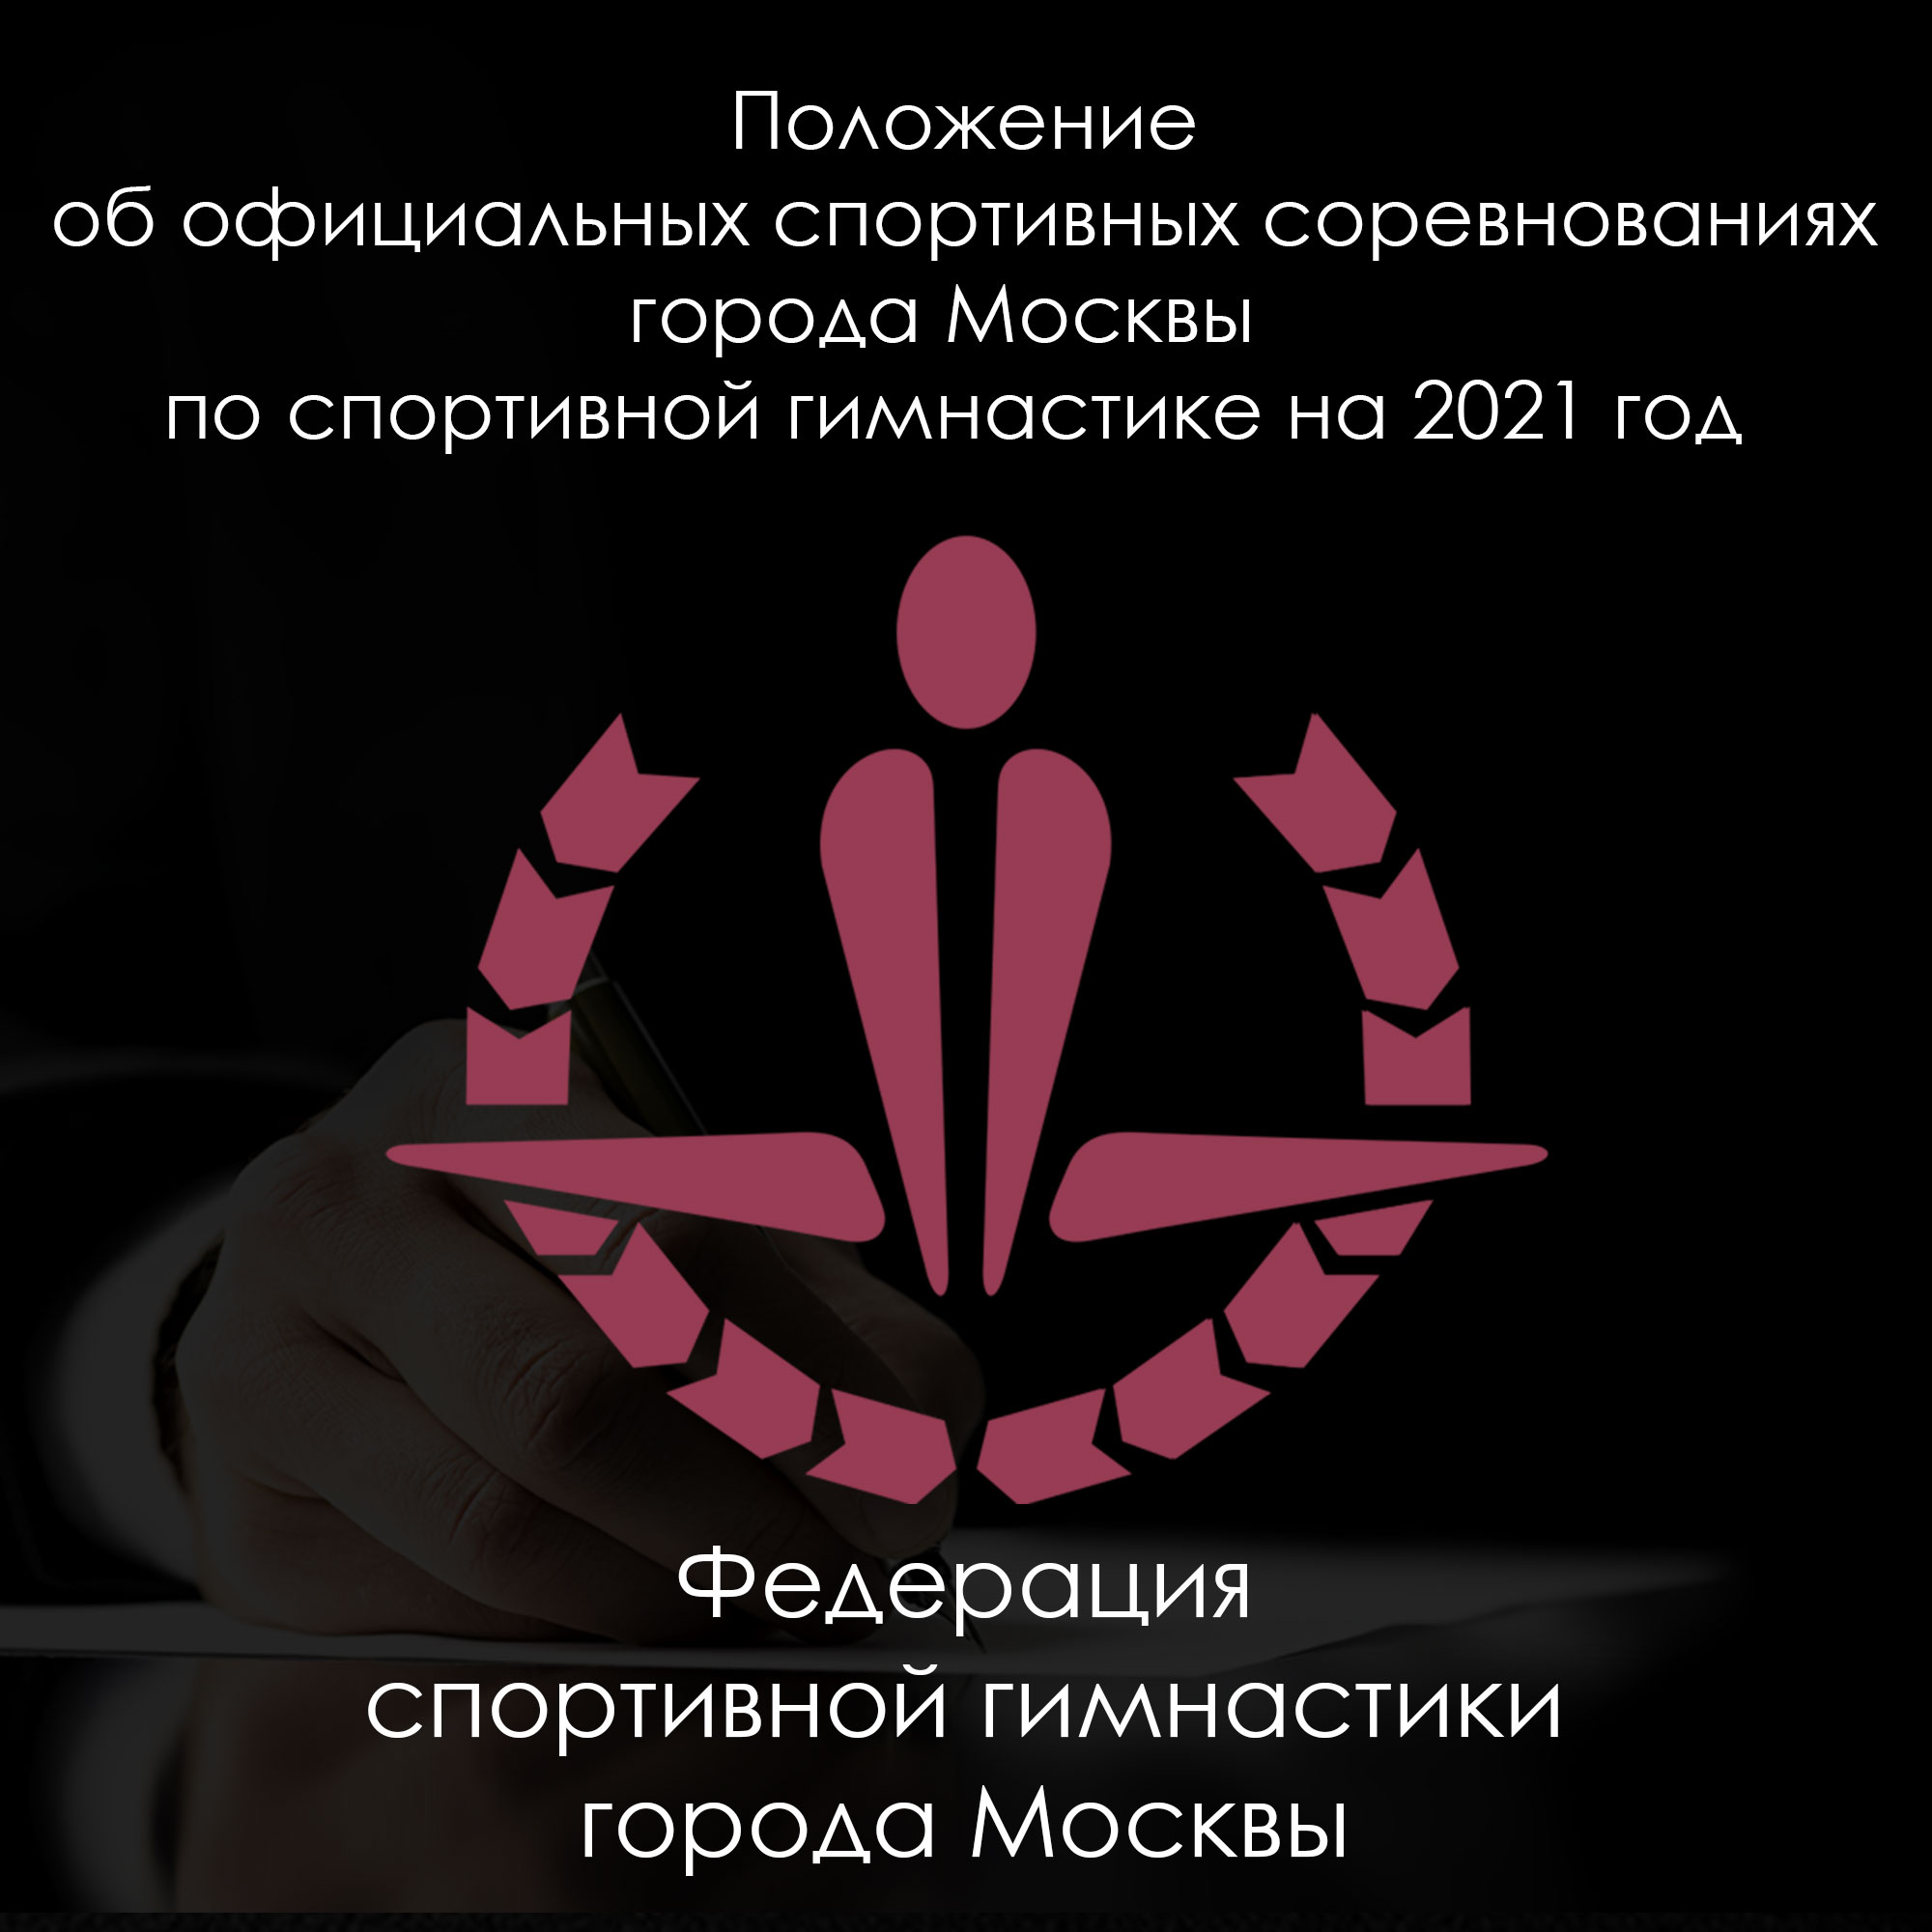 Положение  об официальных спортивных соревнованиях города Москвы  по спортивной гимнастике на 2021 год